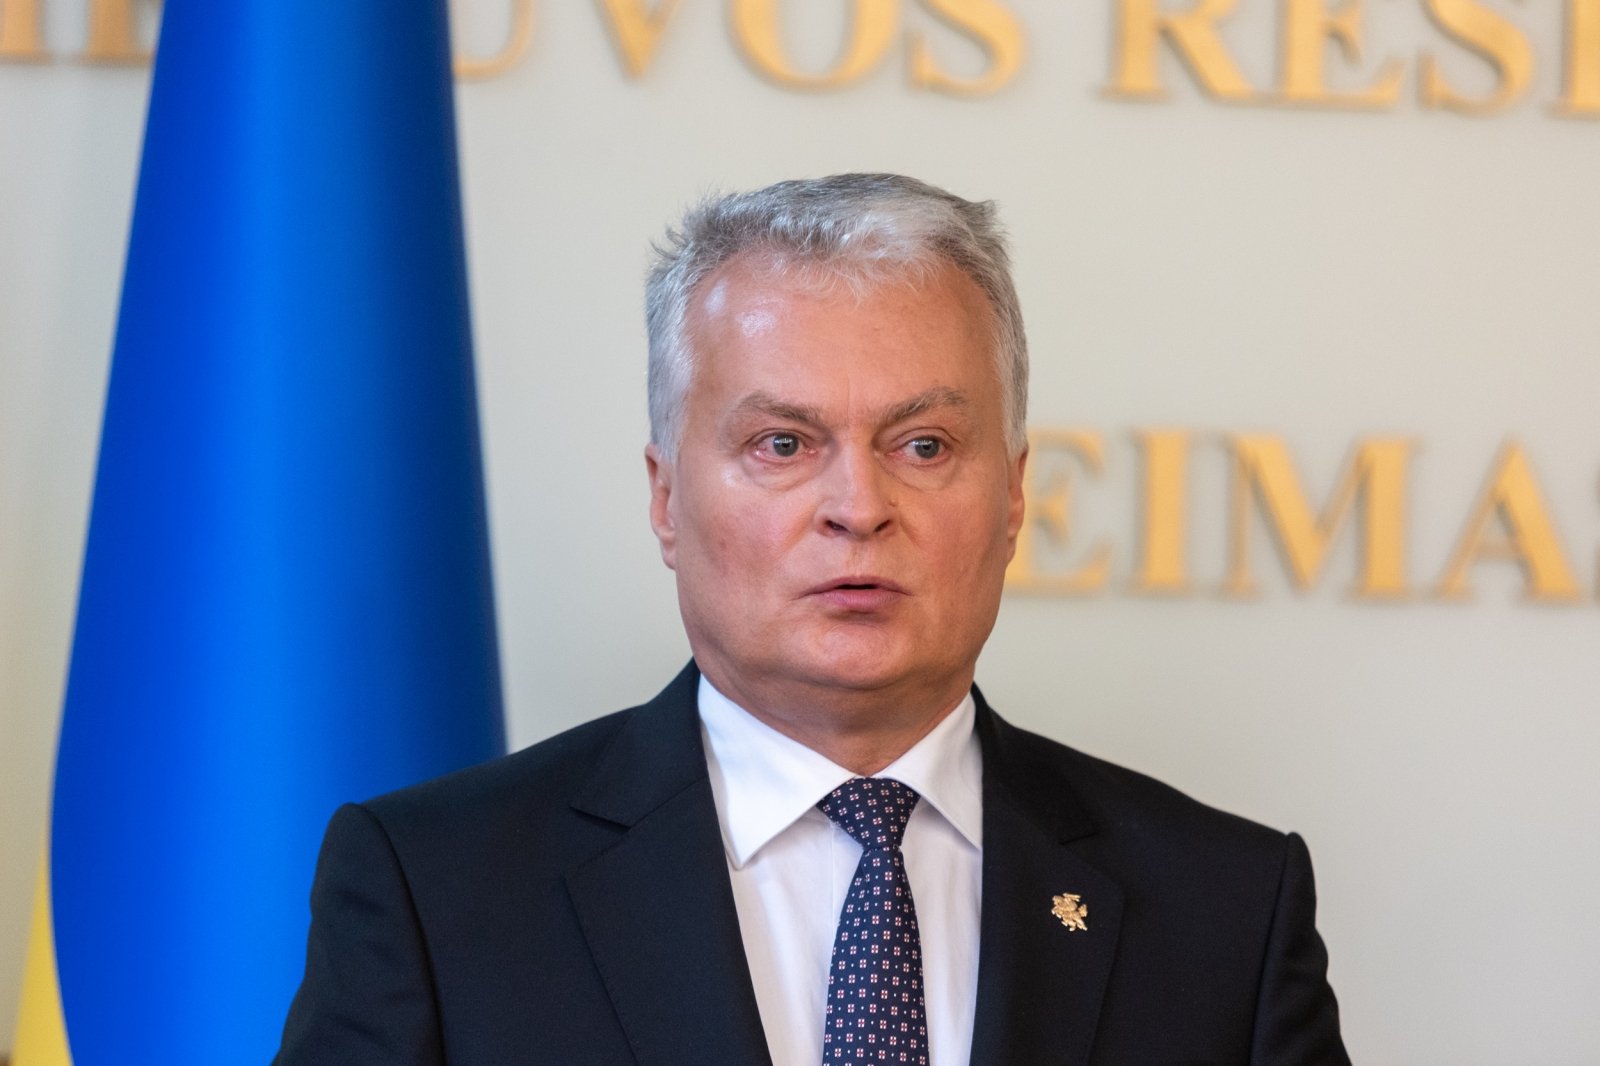 Nausėda odwiedza Lenkiję, aby omówić pomoc dla Ukrainy